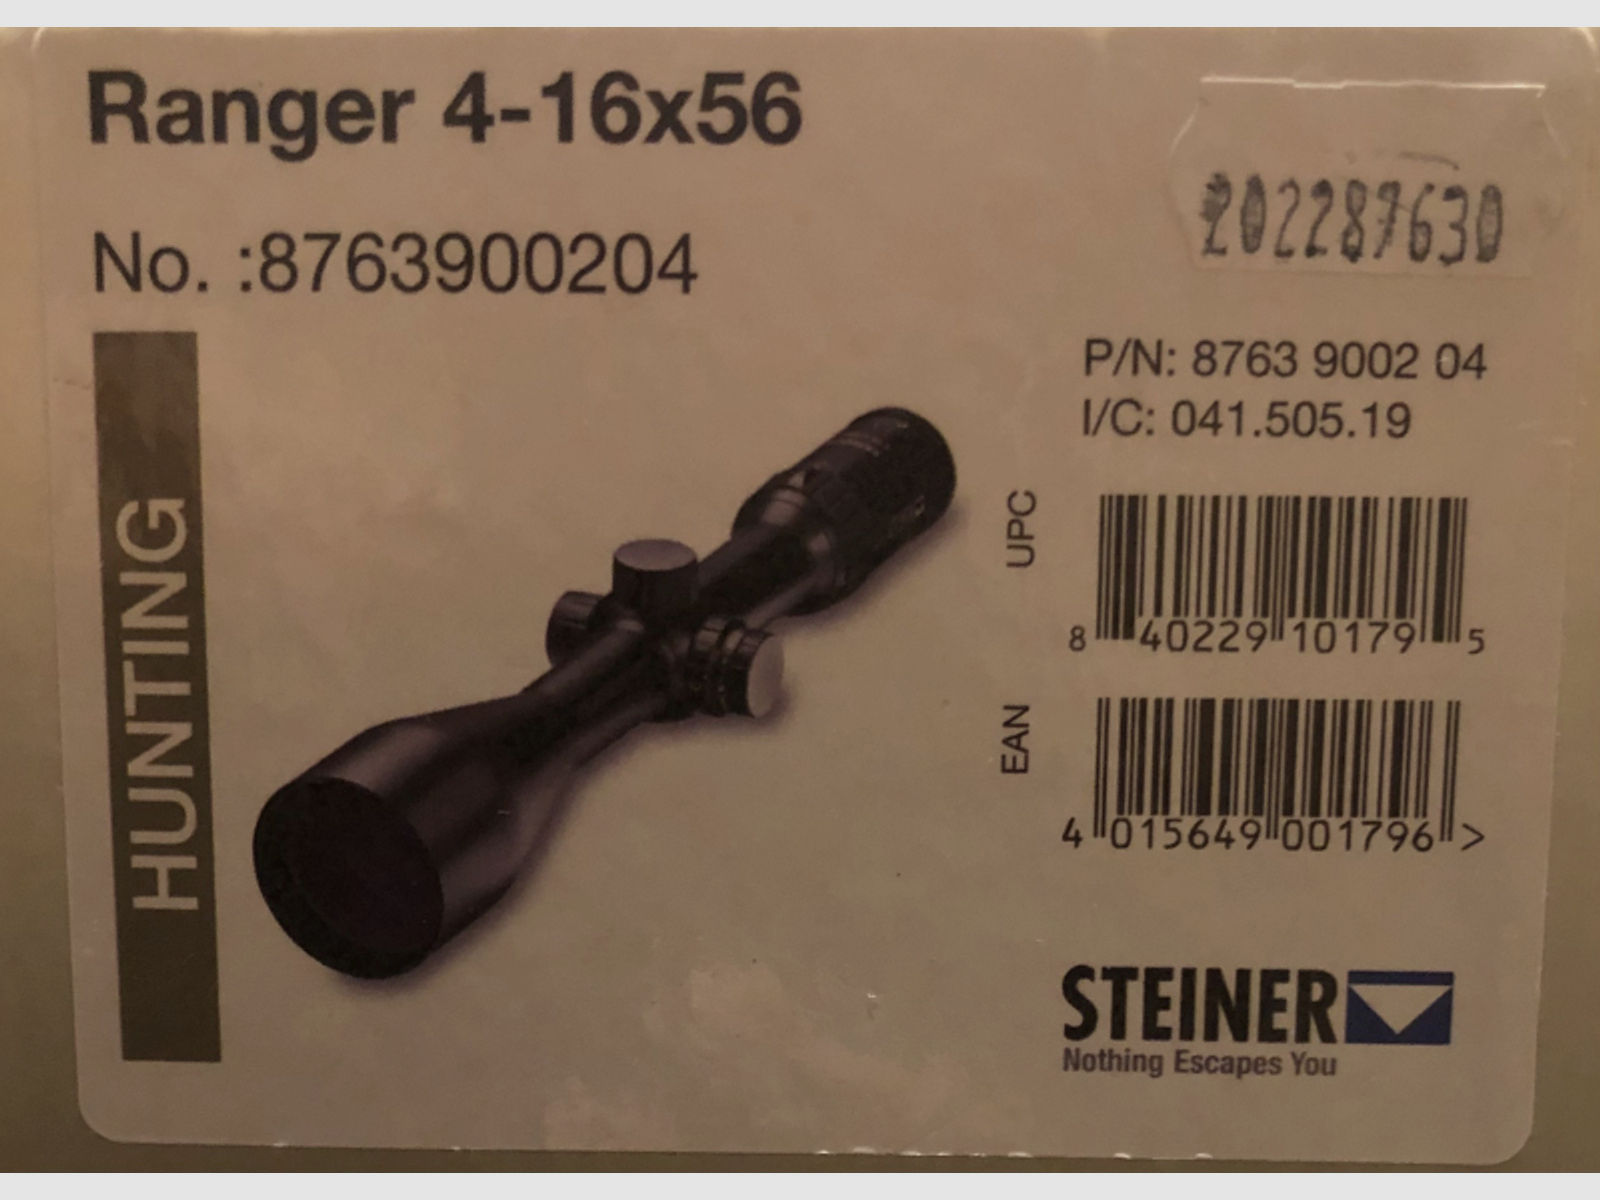 Steiner Zielfernrohr 4-16x56